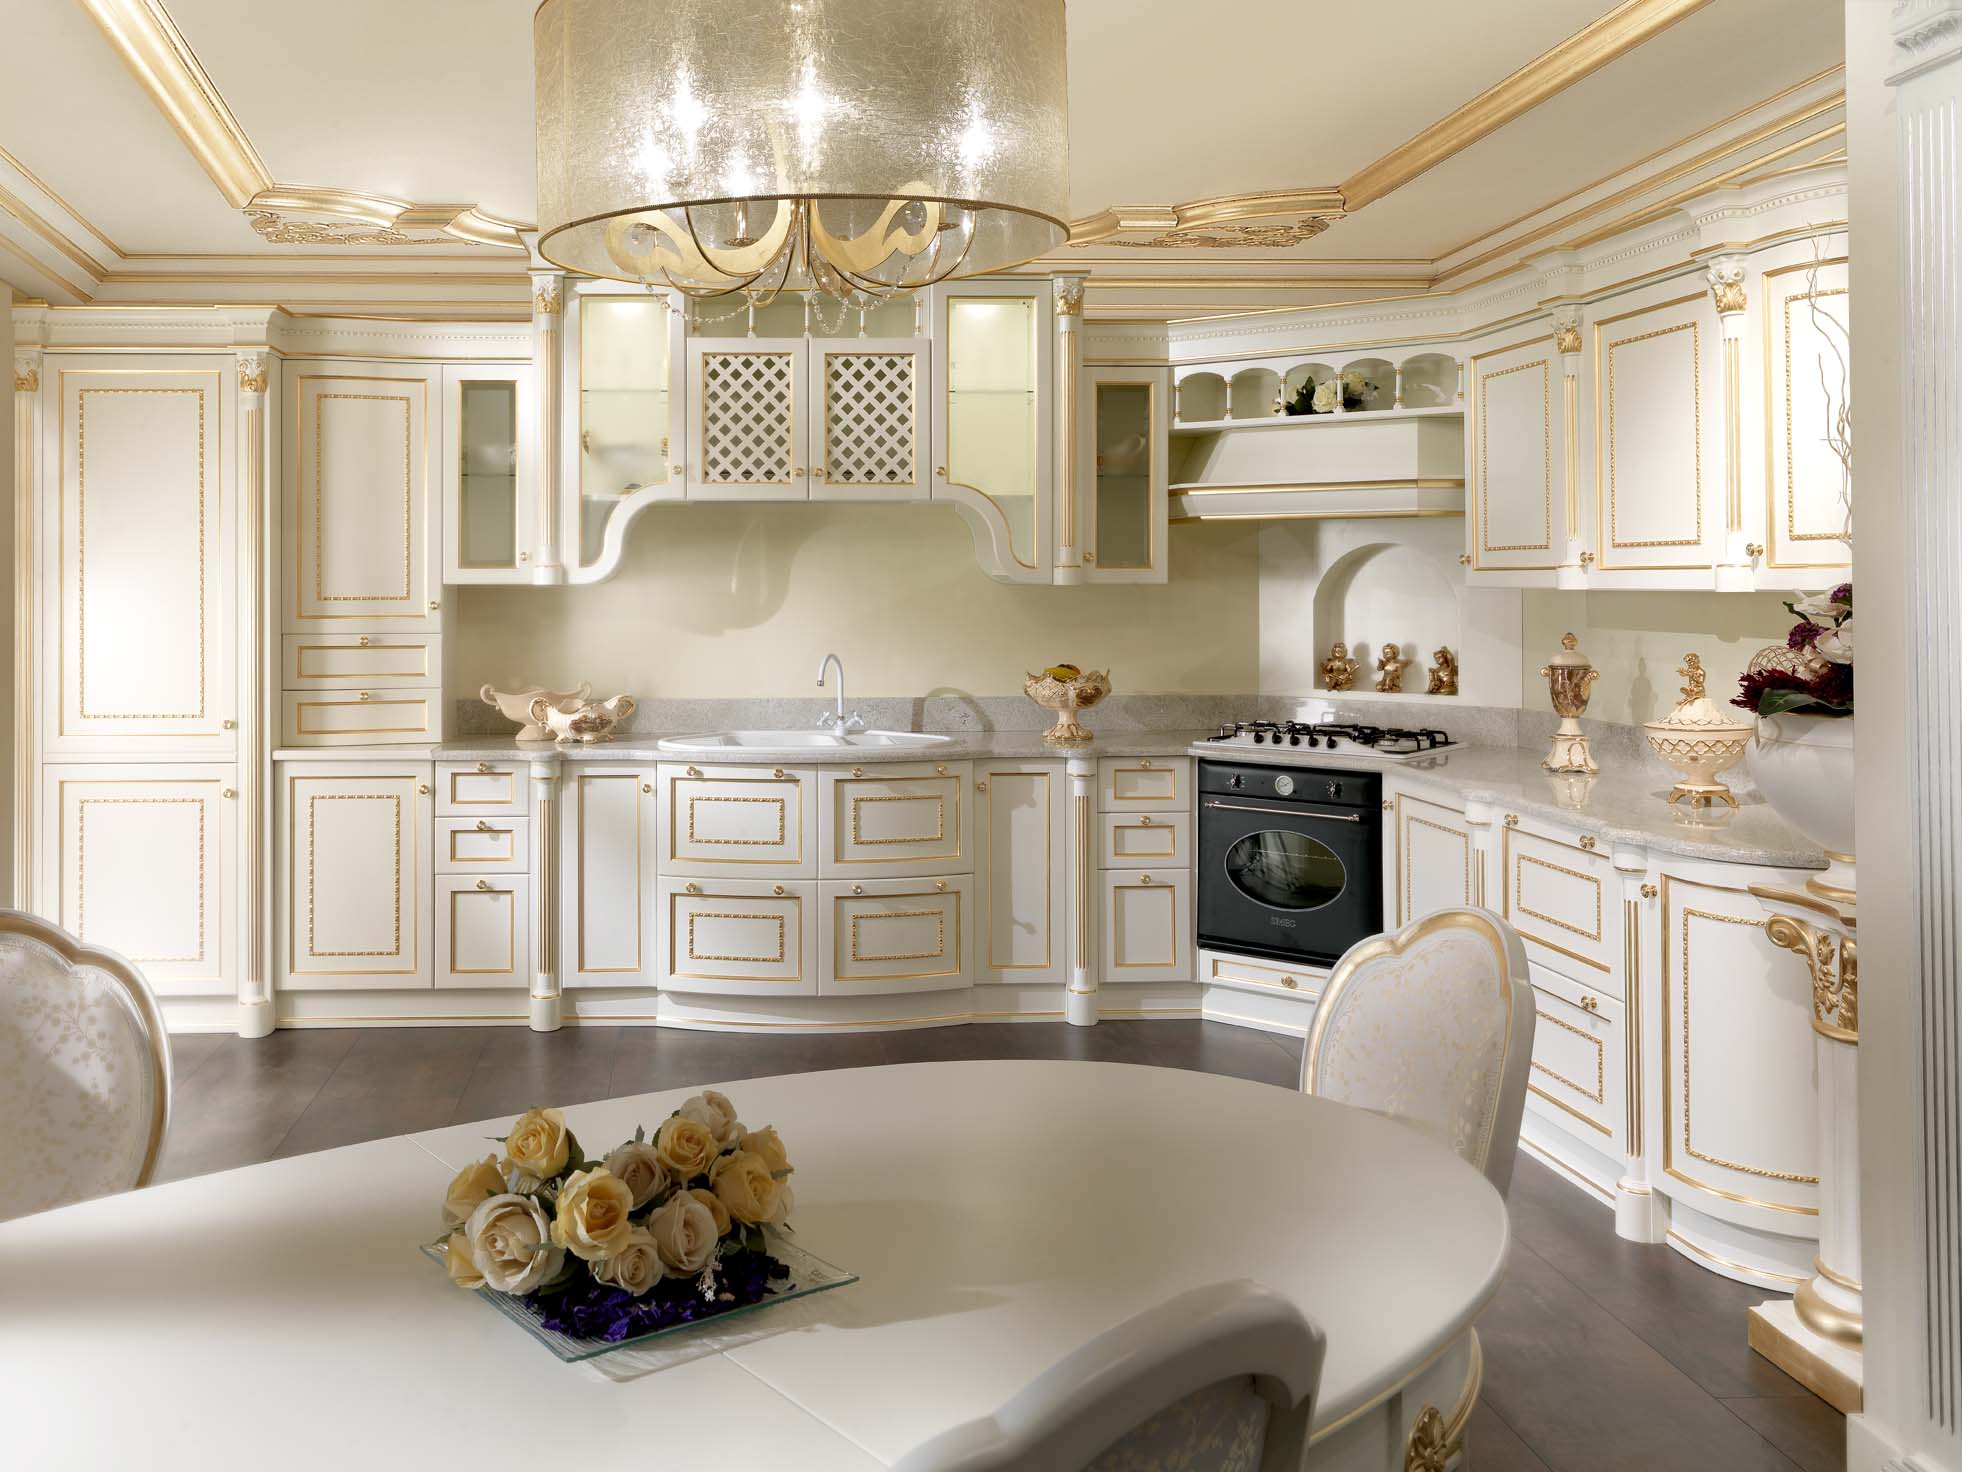 Balts virtuves interjers ar apzeltītām detaļām.